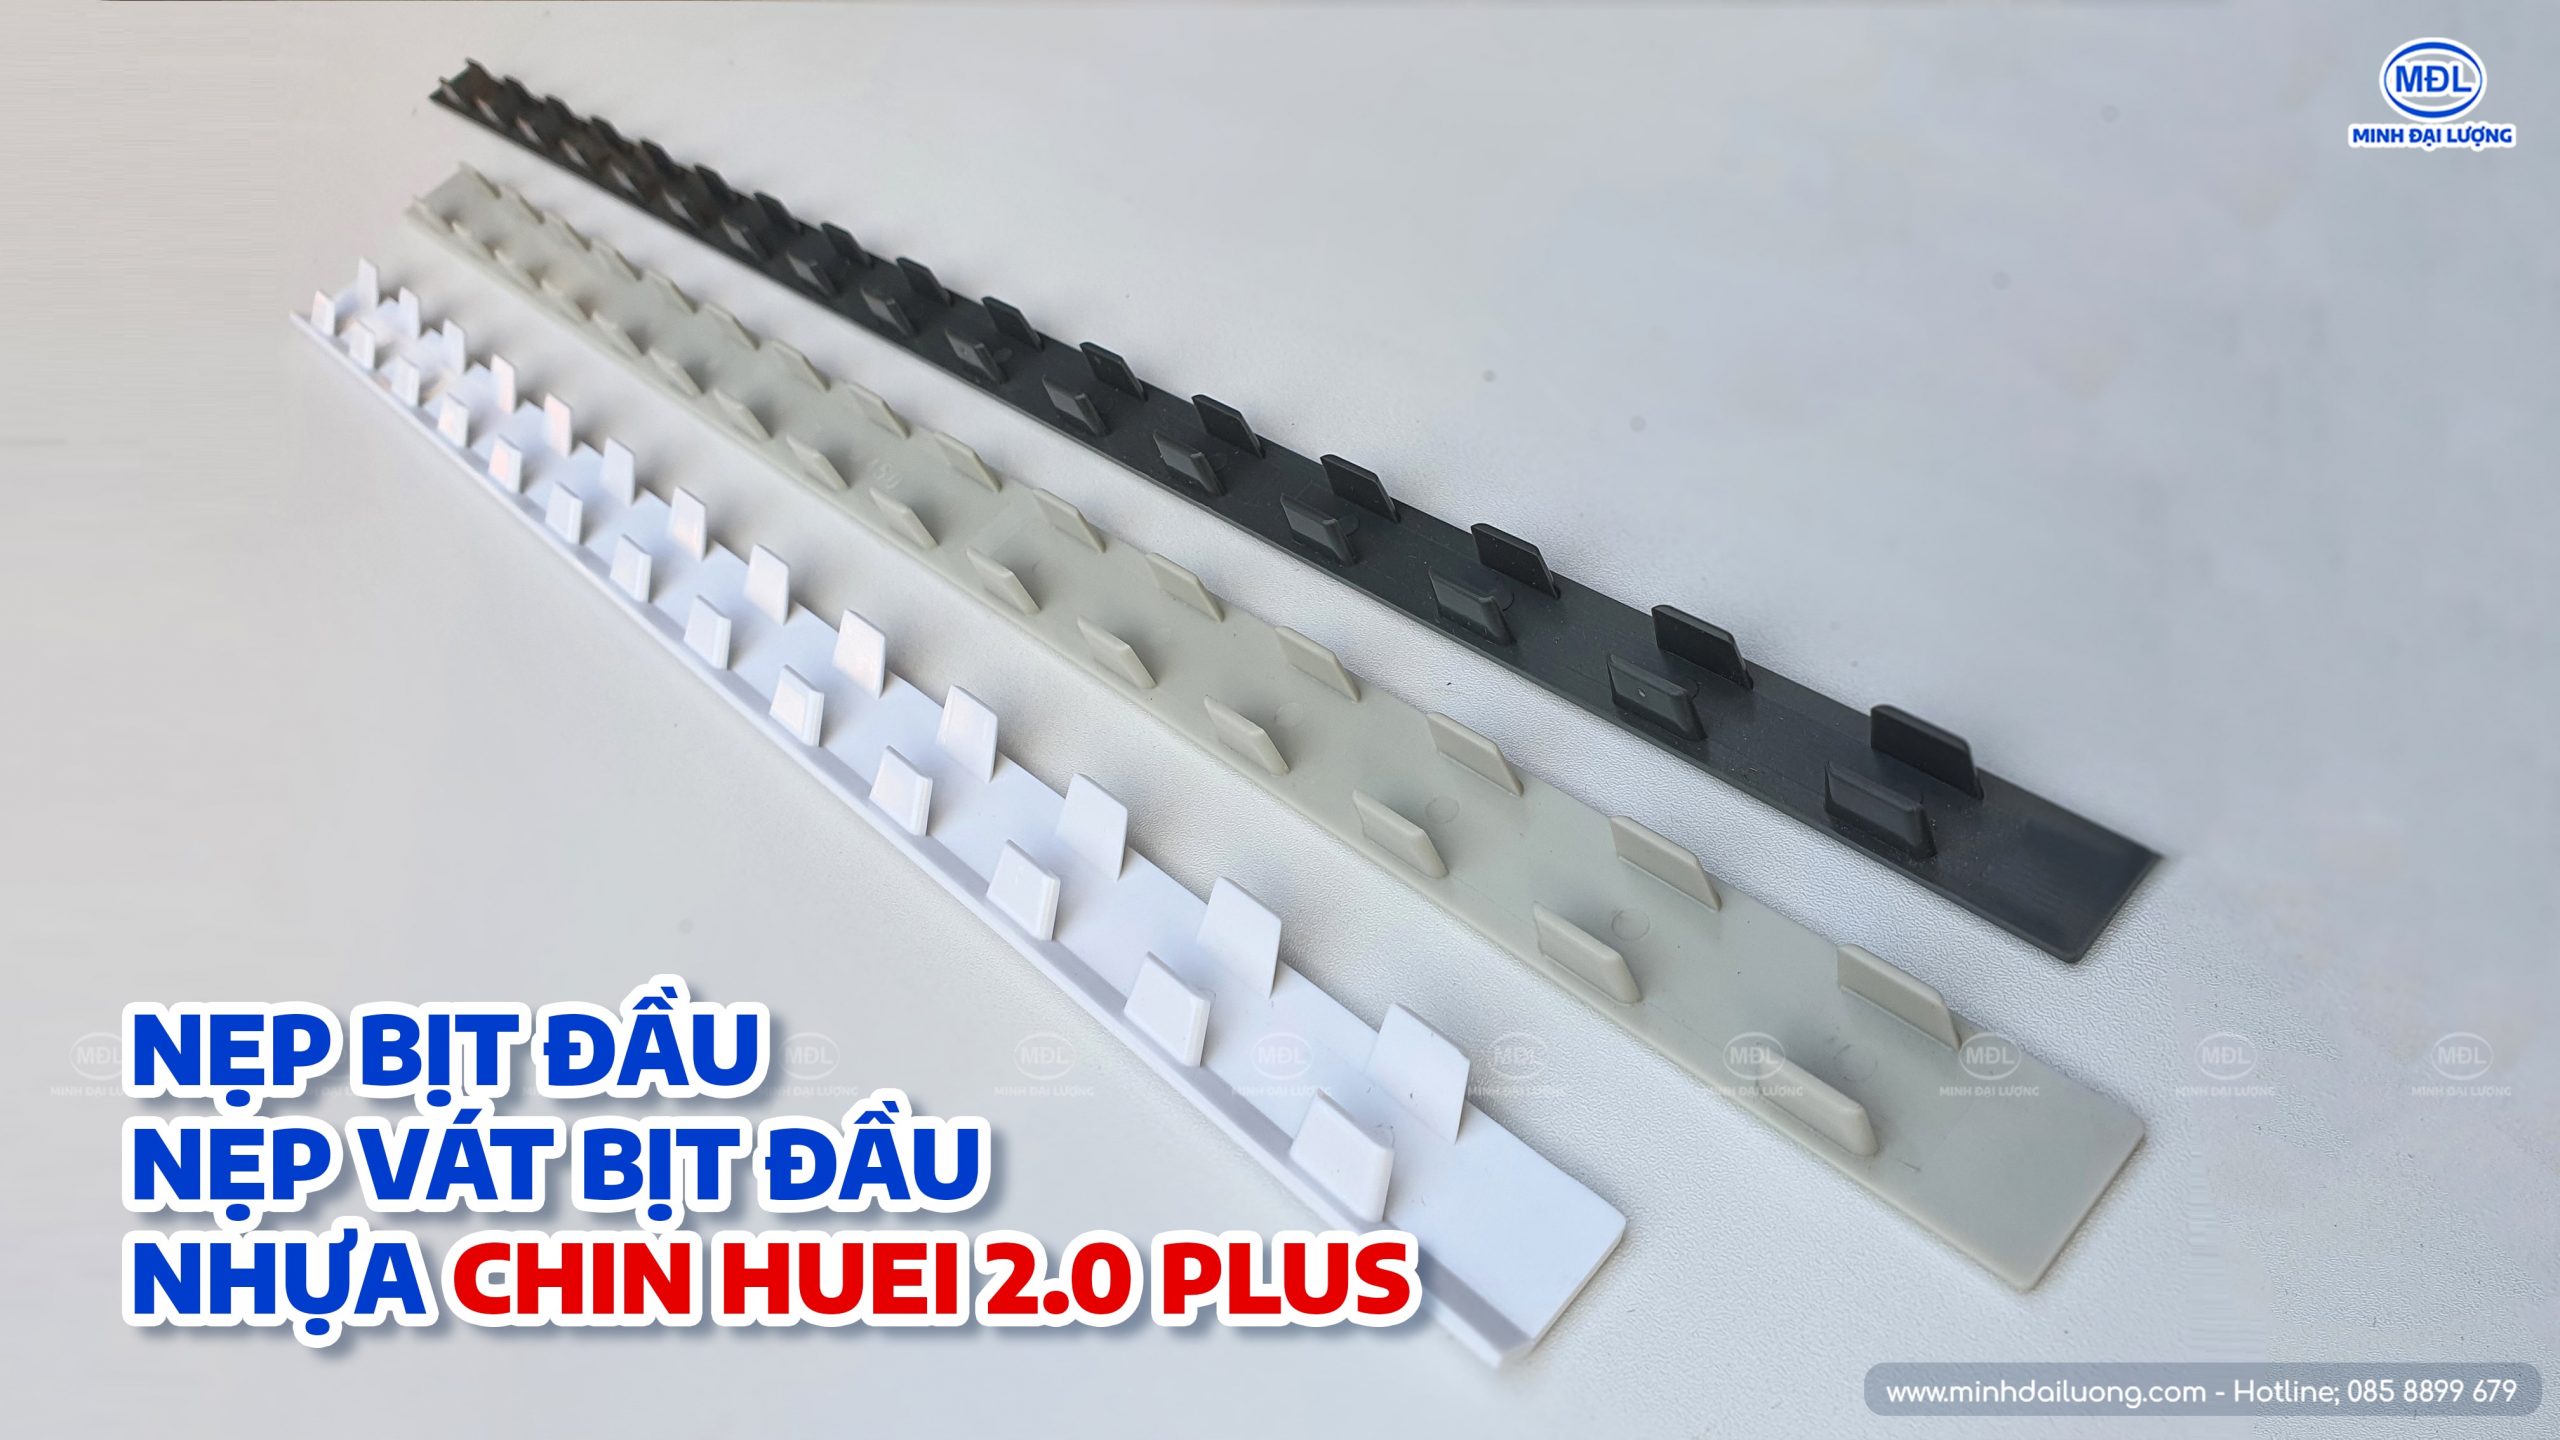 Hình thực tế nẹp bịt đầu tấm nhựa Chin Huei 2.0 Plus 8 - Nhà phân phối Minh Đại Lượng